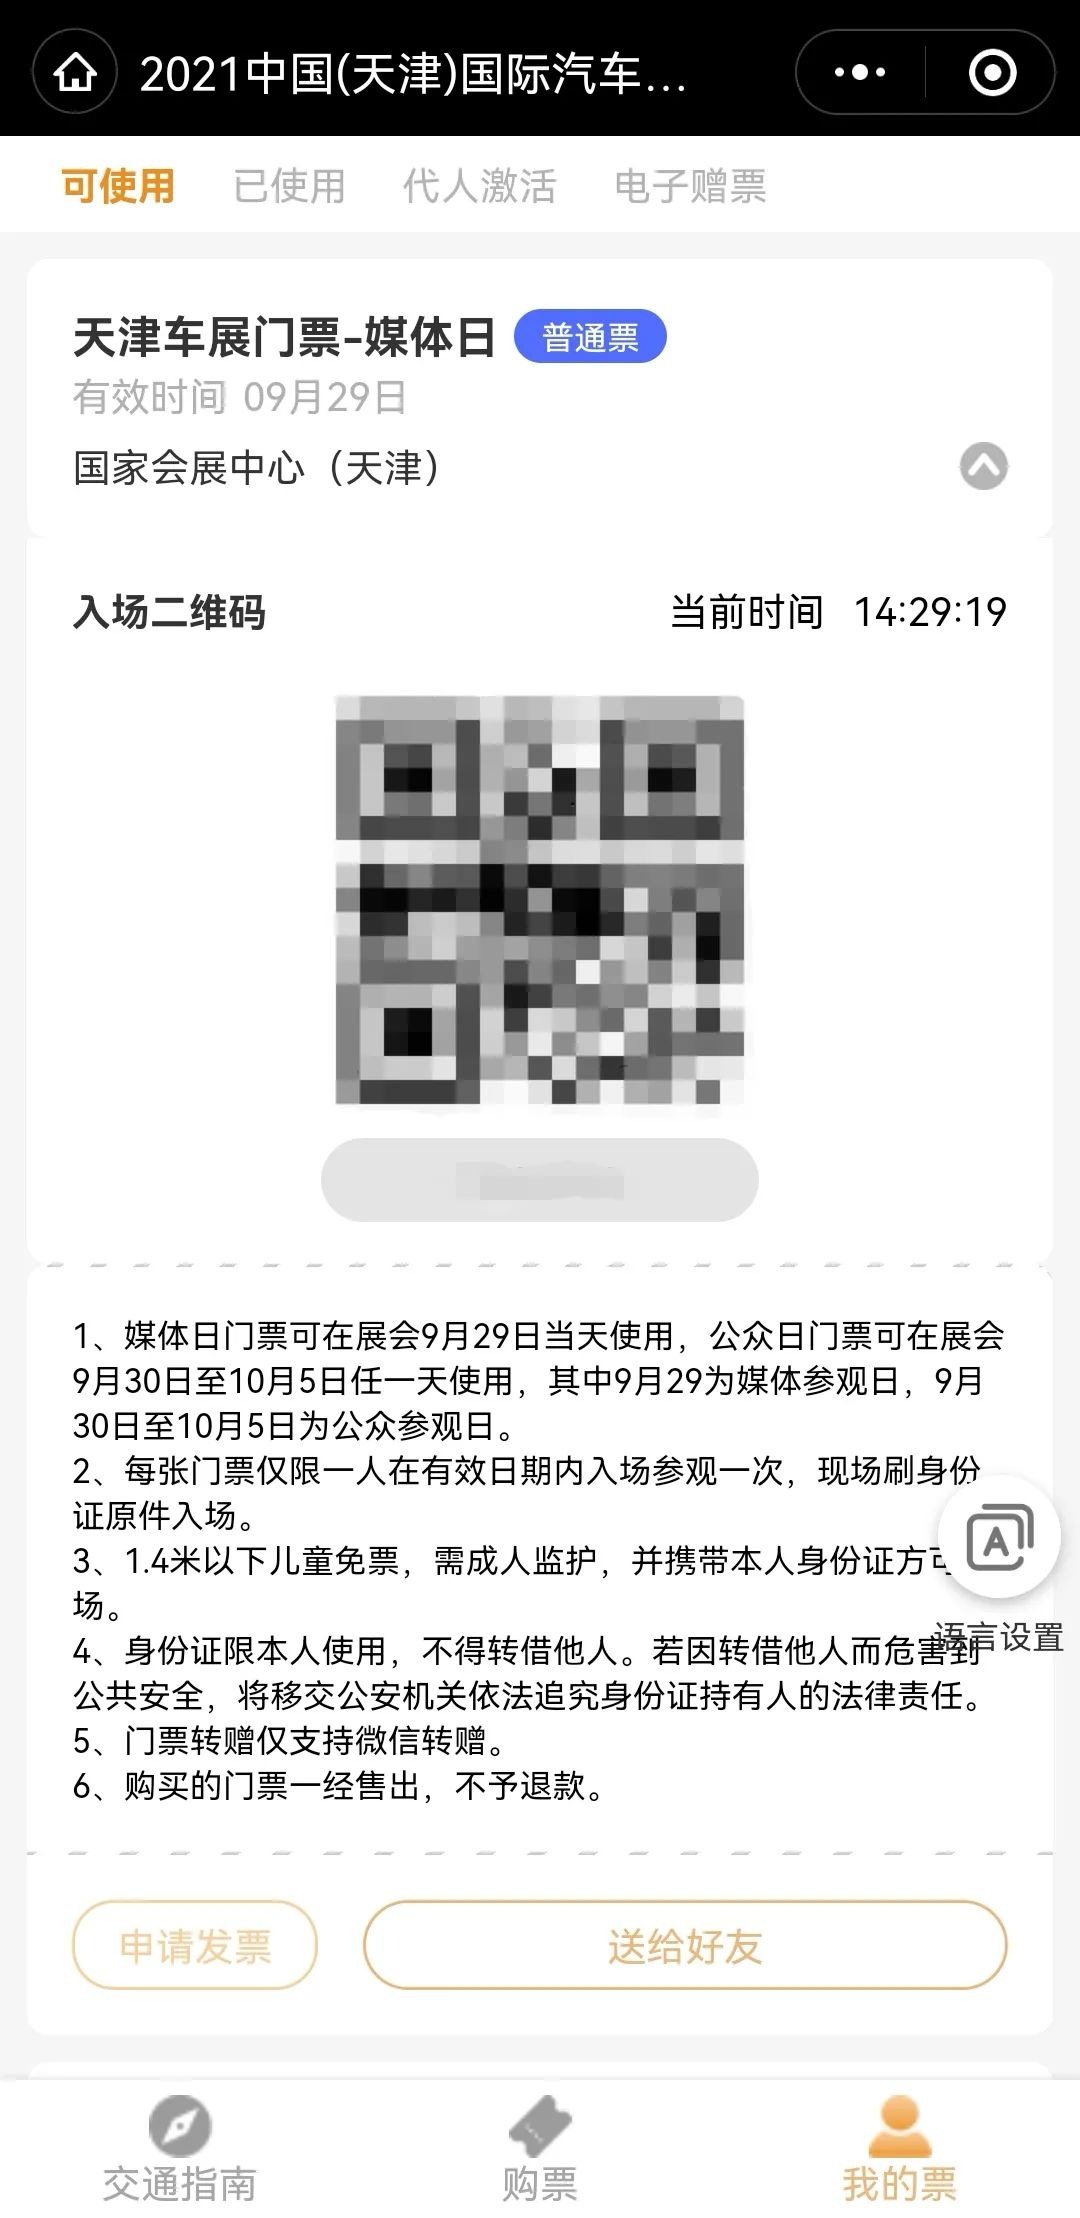 2023车展上海门票购买(票种+价格+入口) - 上海慢慢看